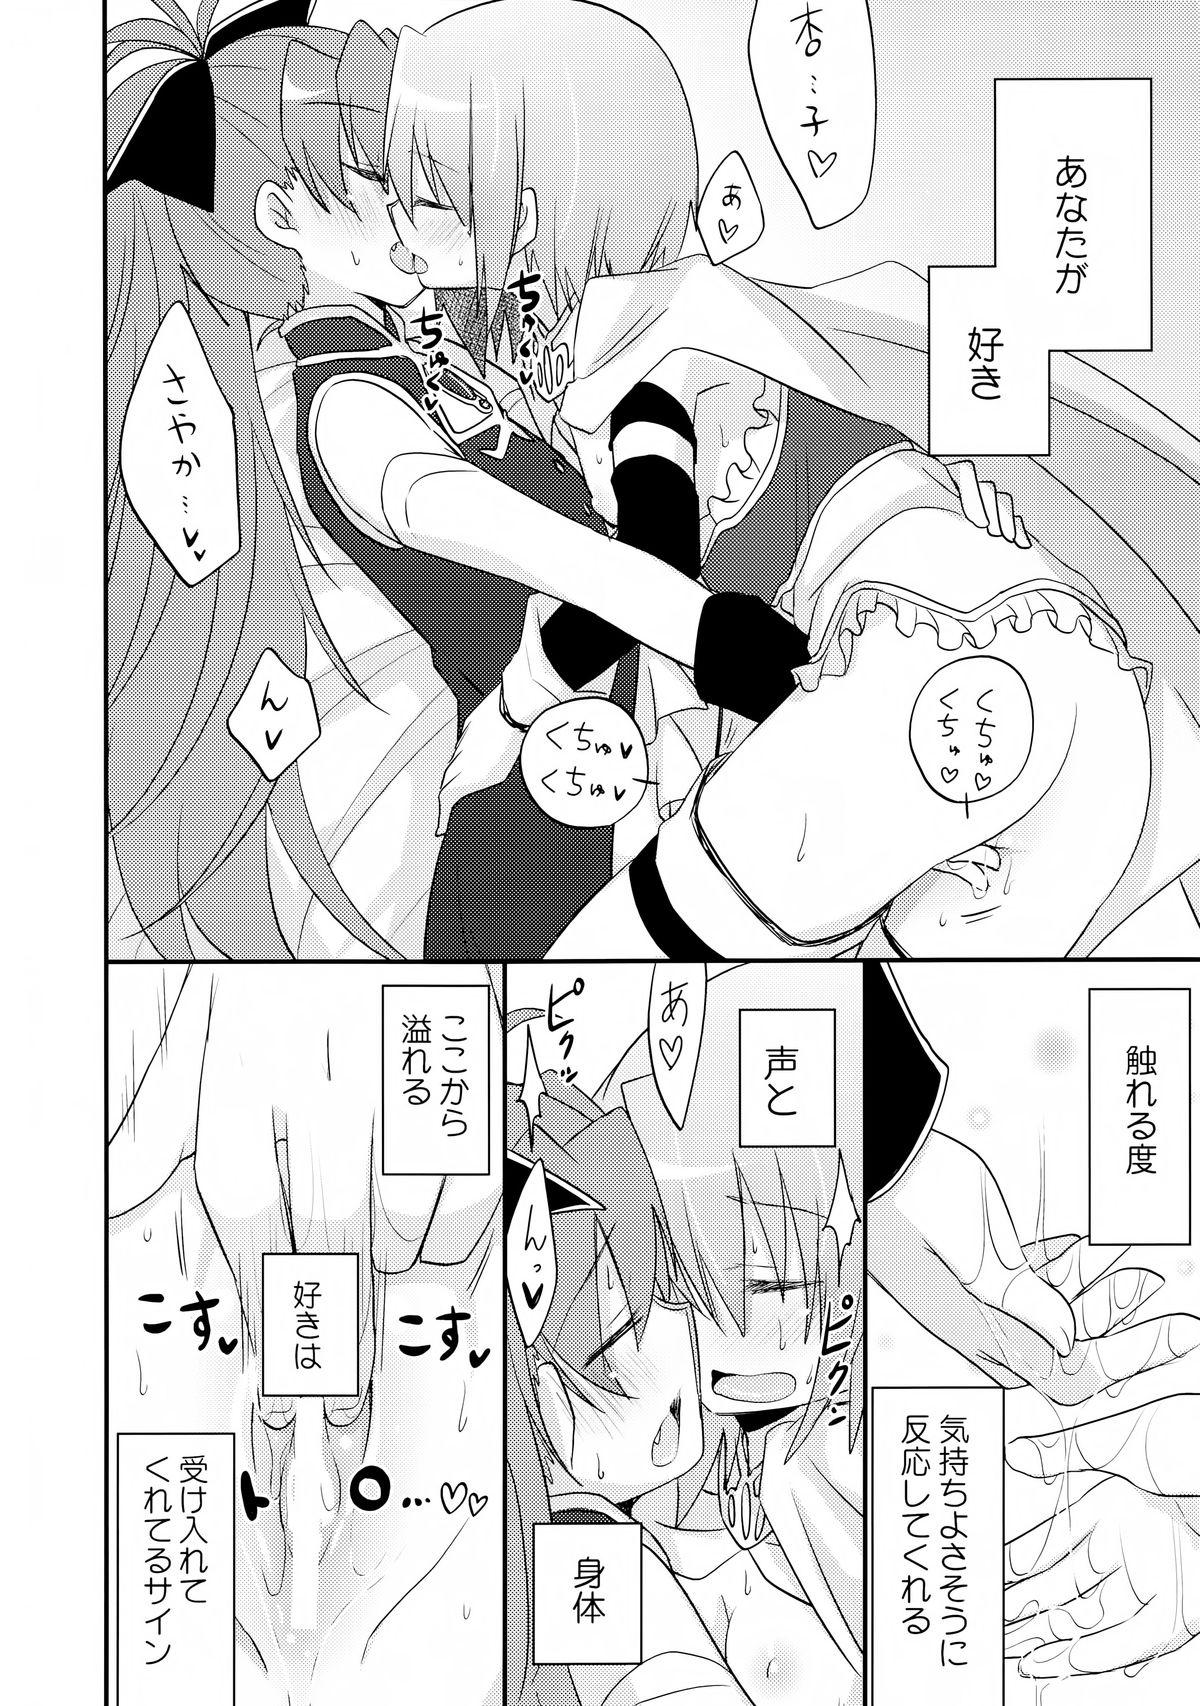 Stretching Atashitachi no Jigo Senkyou - Puella magi madoka magica Brother Sister - Page 8